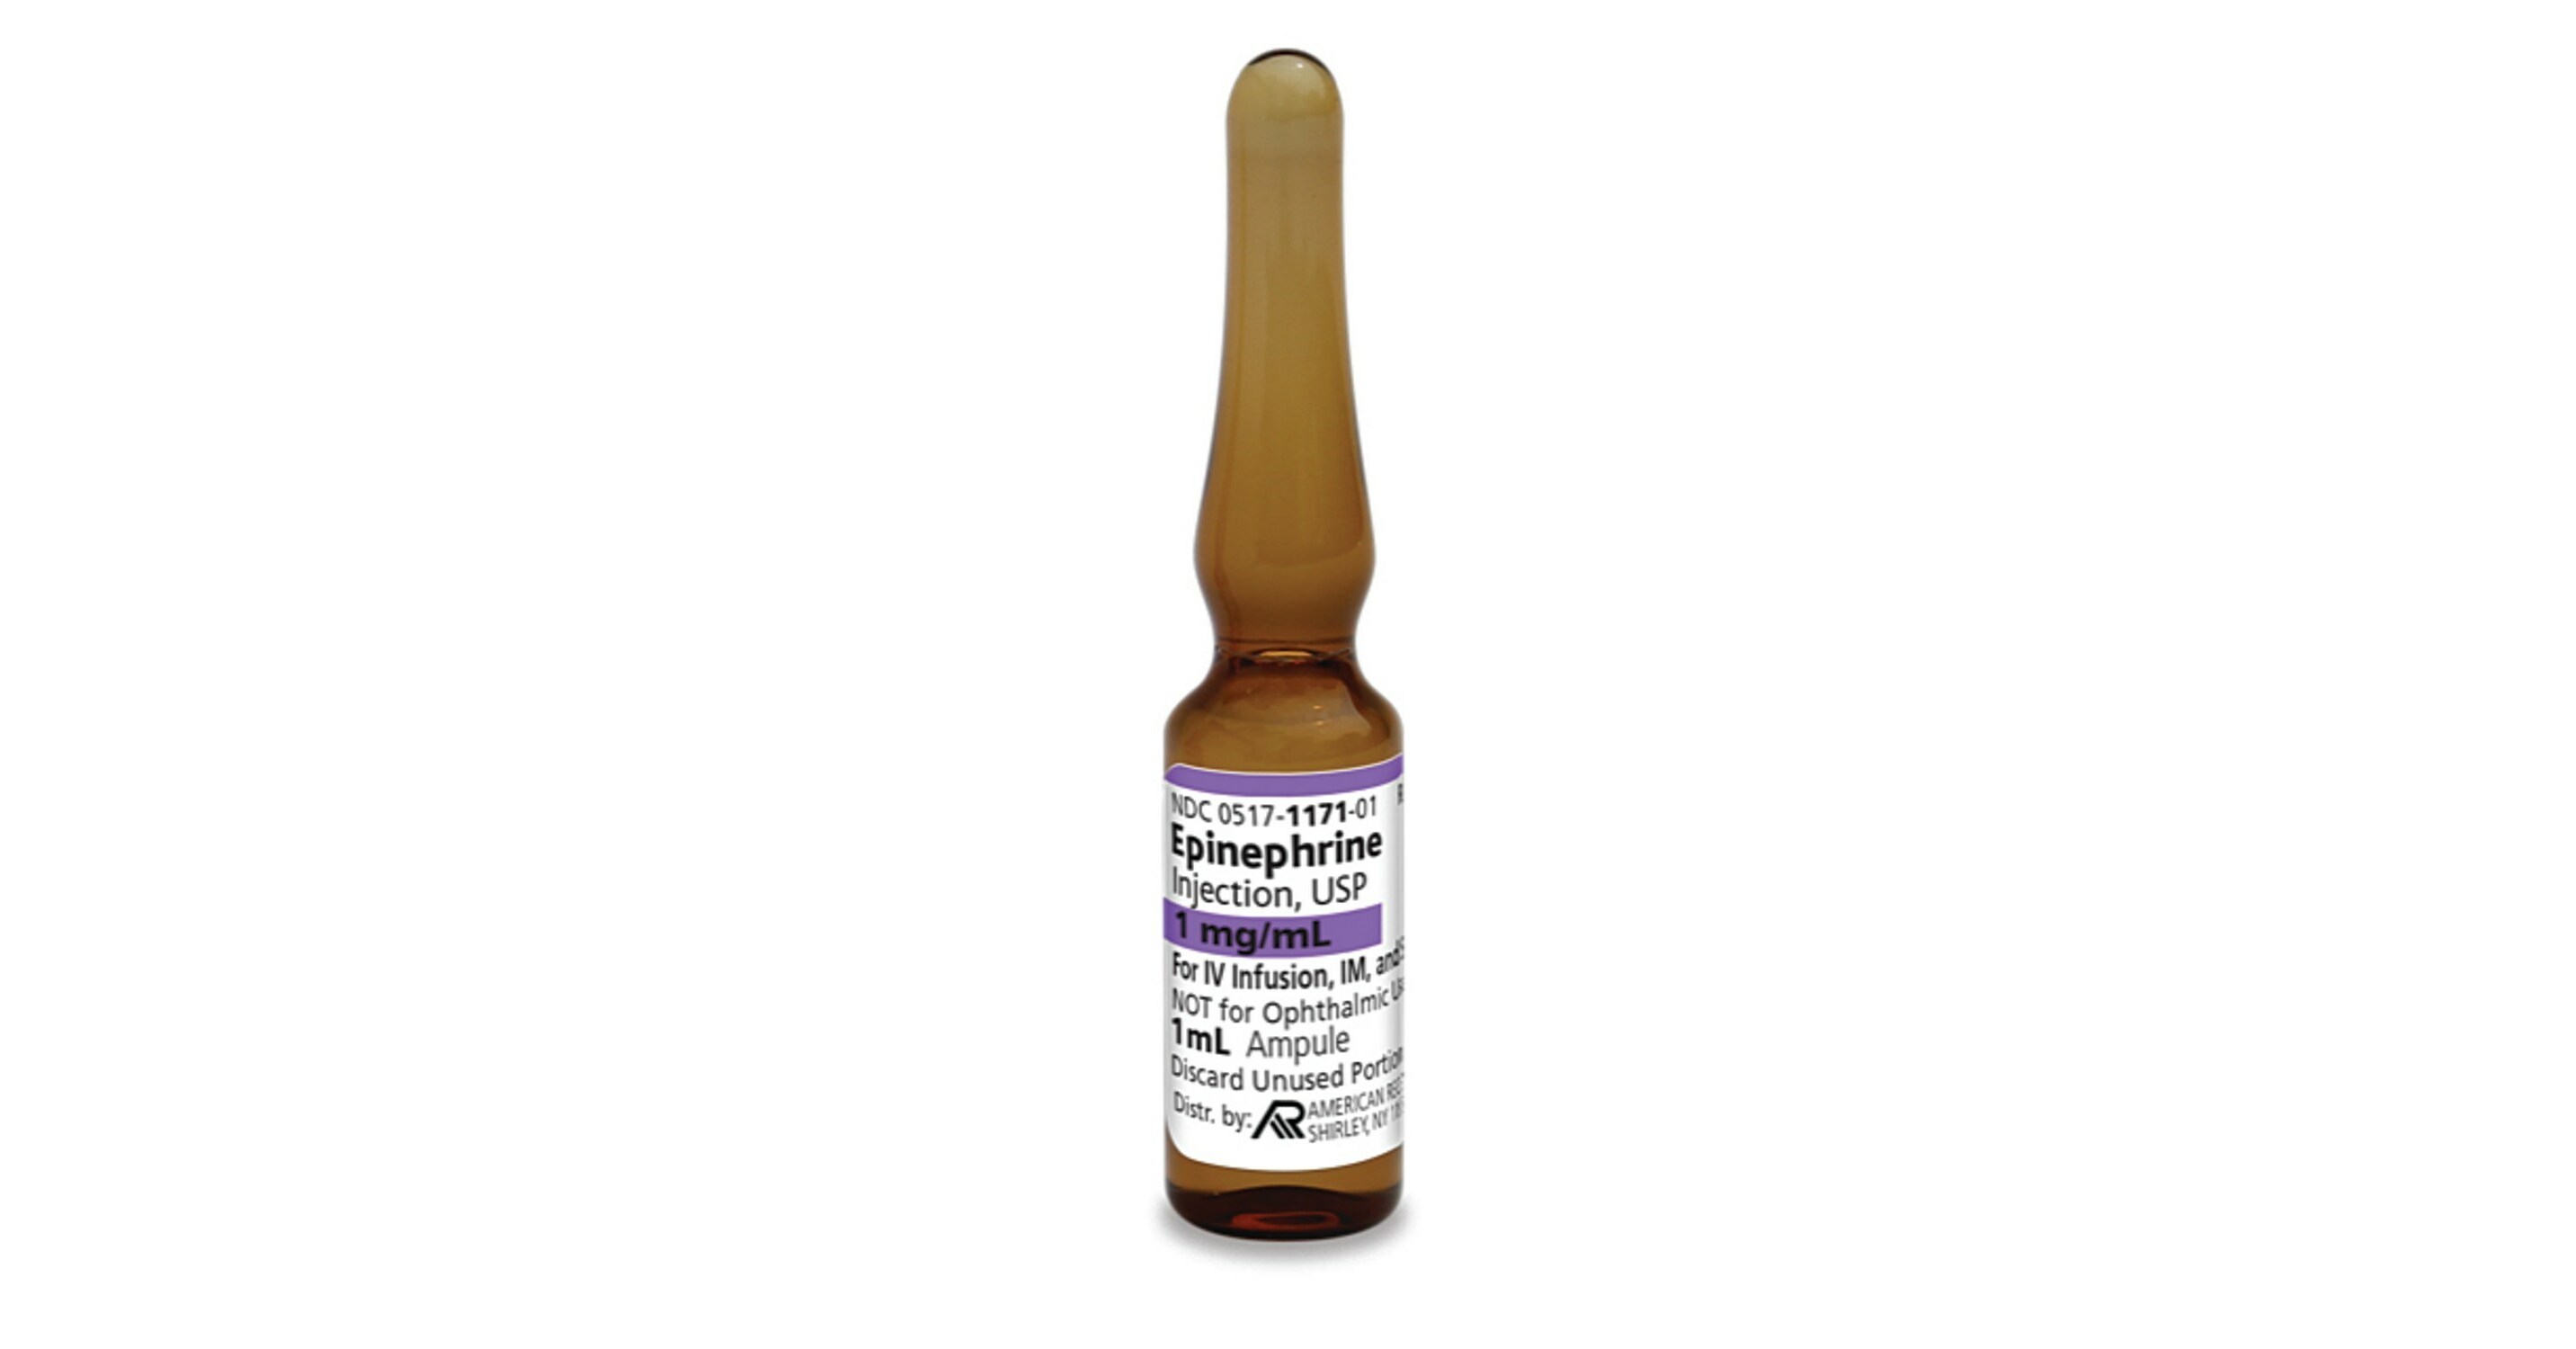 epinephrine injection